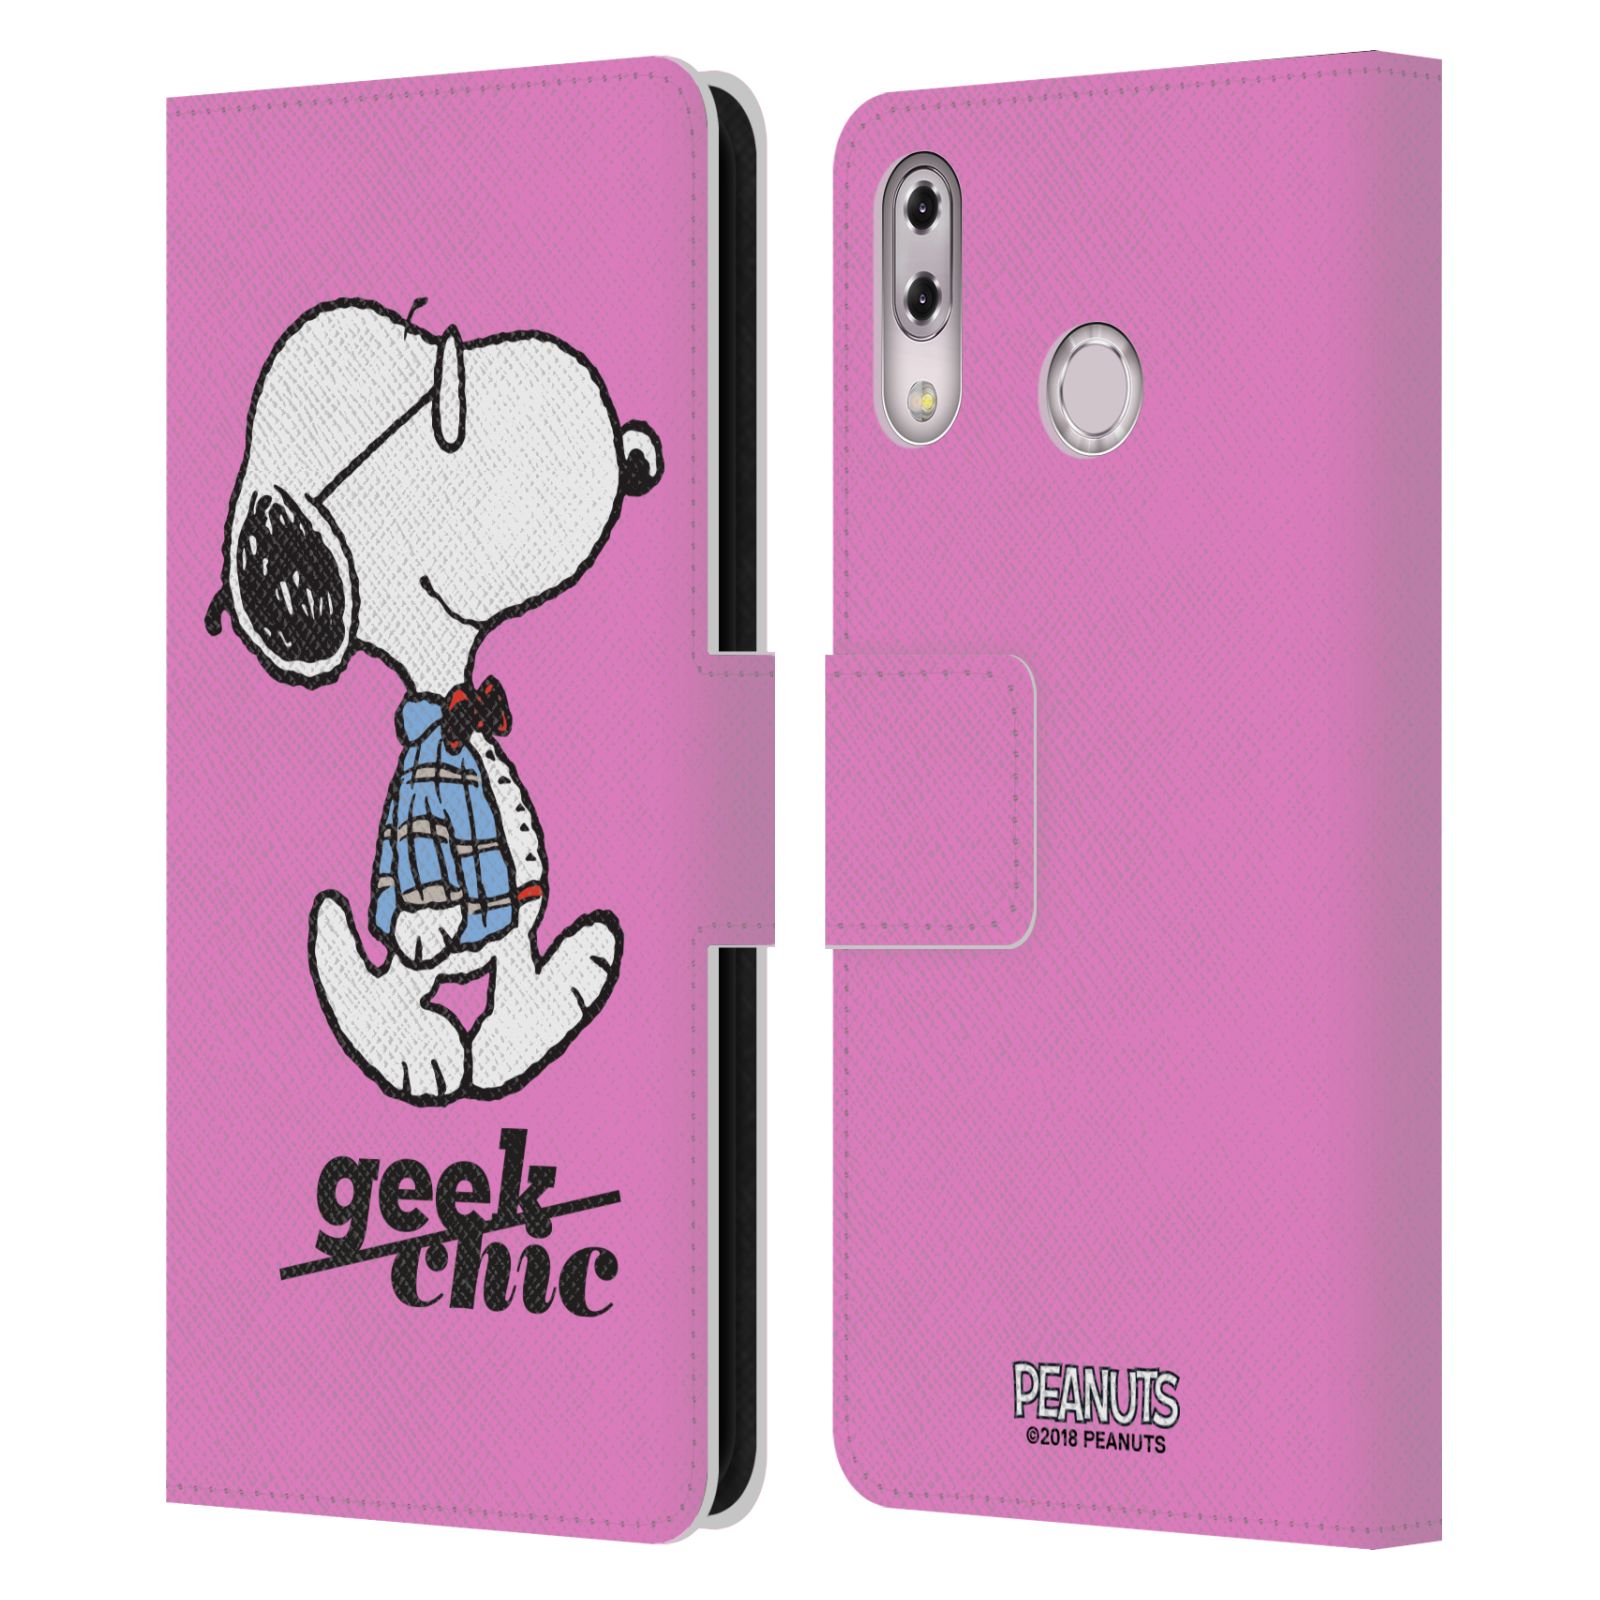 Pouzdro na mobil Asus Zenfone 5z ZS620KL / 5 ZE620KL - Head Case - Peanuts - růžový pejsek snoopy nerd